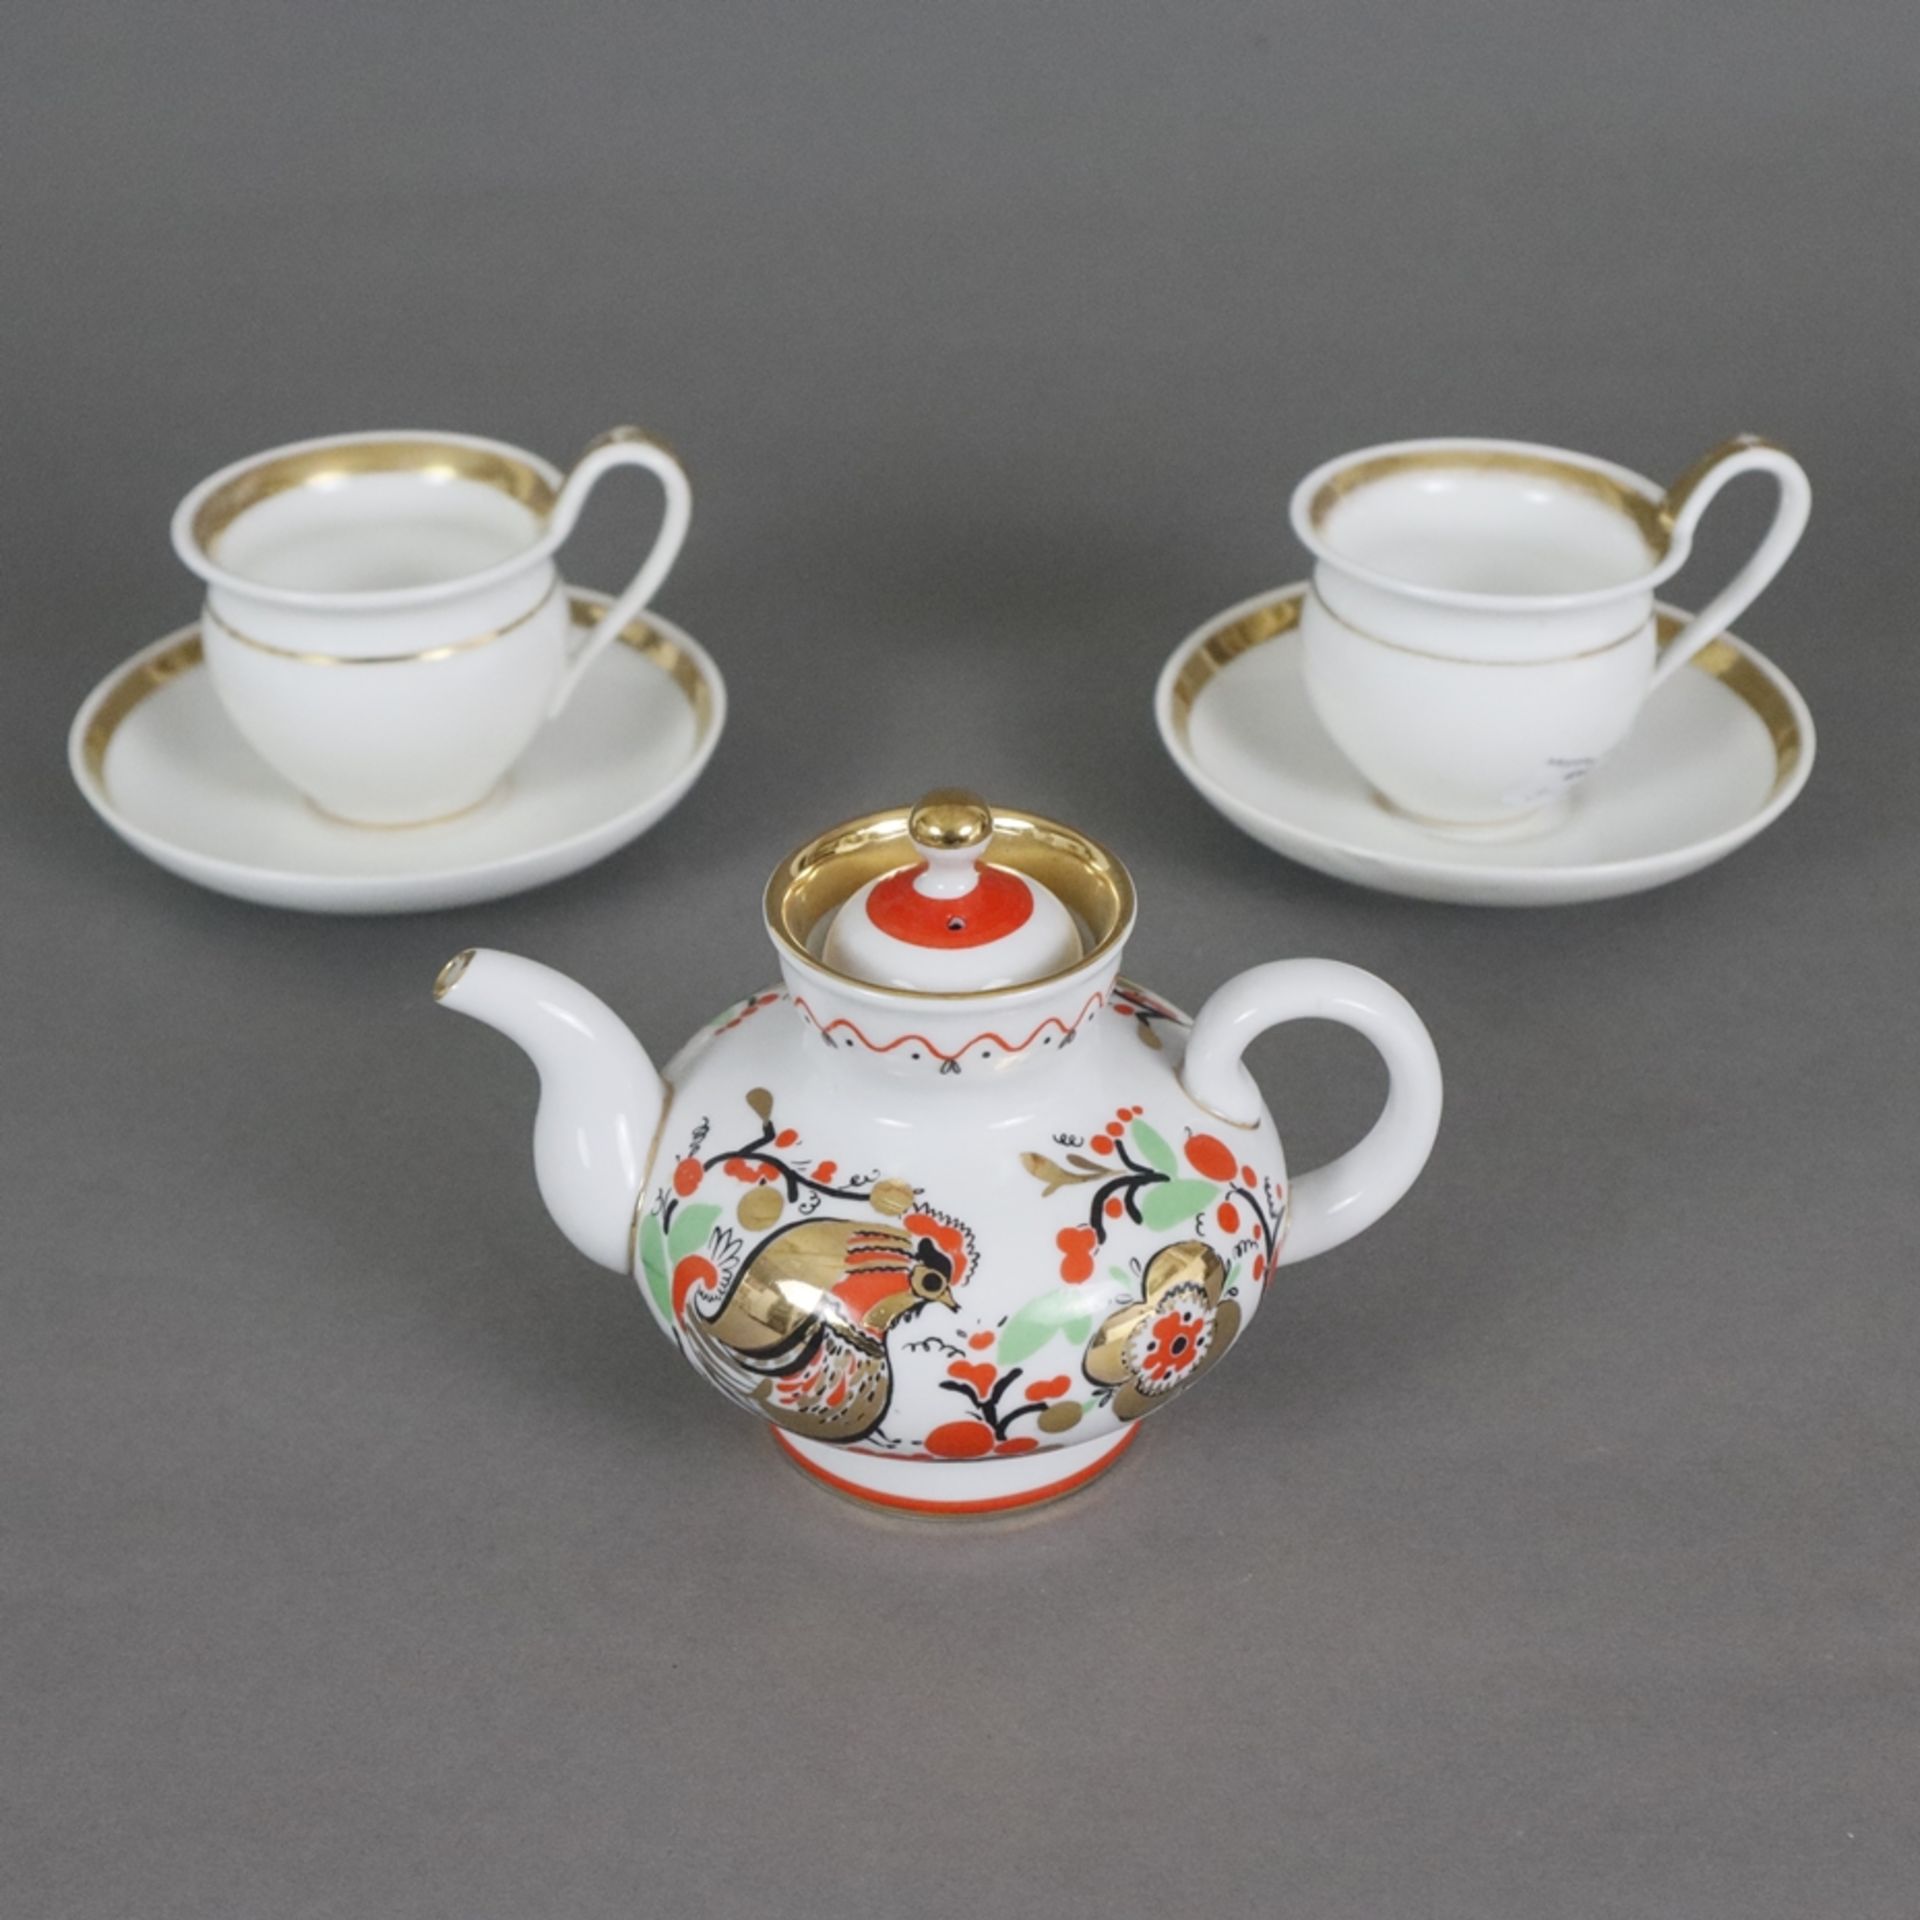 Russische Teekanne und zwei Empire-Tassen - Porzellan, 1x kleine Teekanne, Lomonosov, St. Petersbur